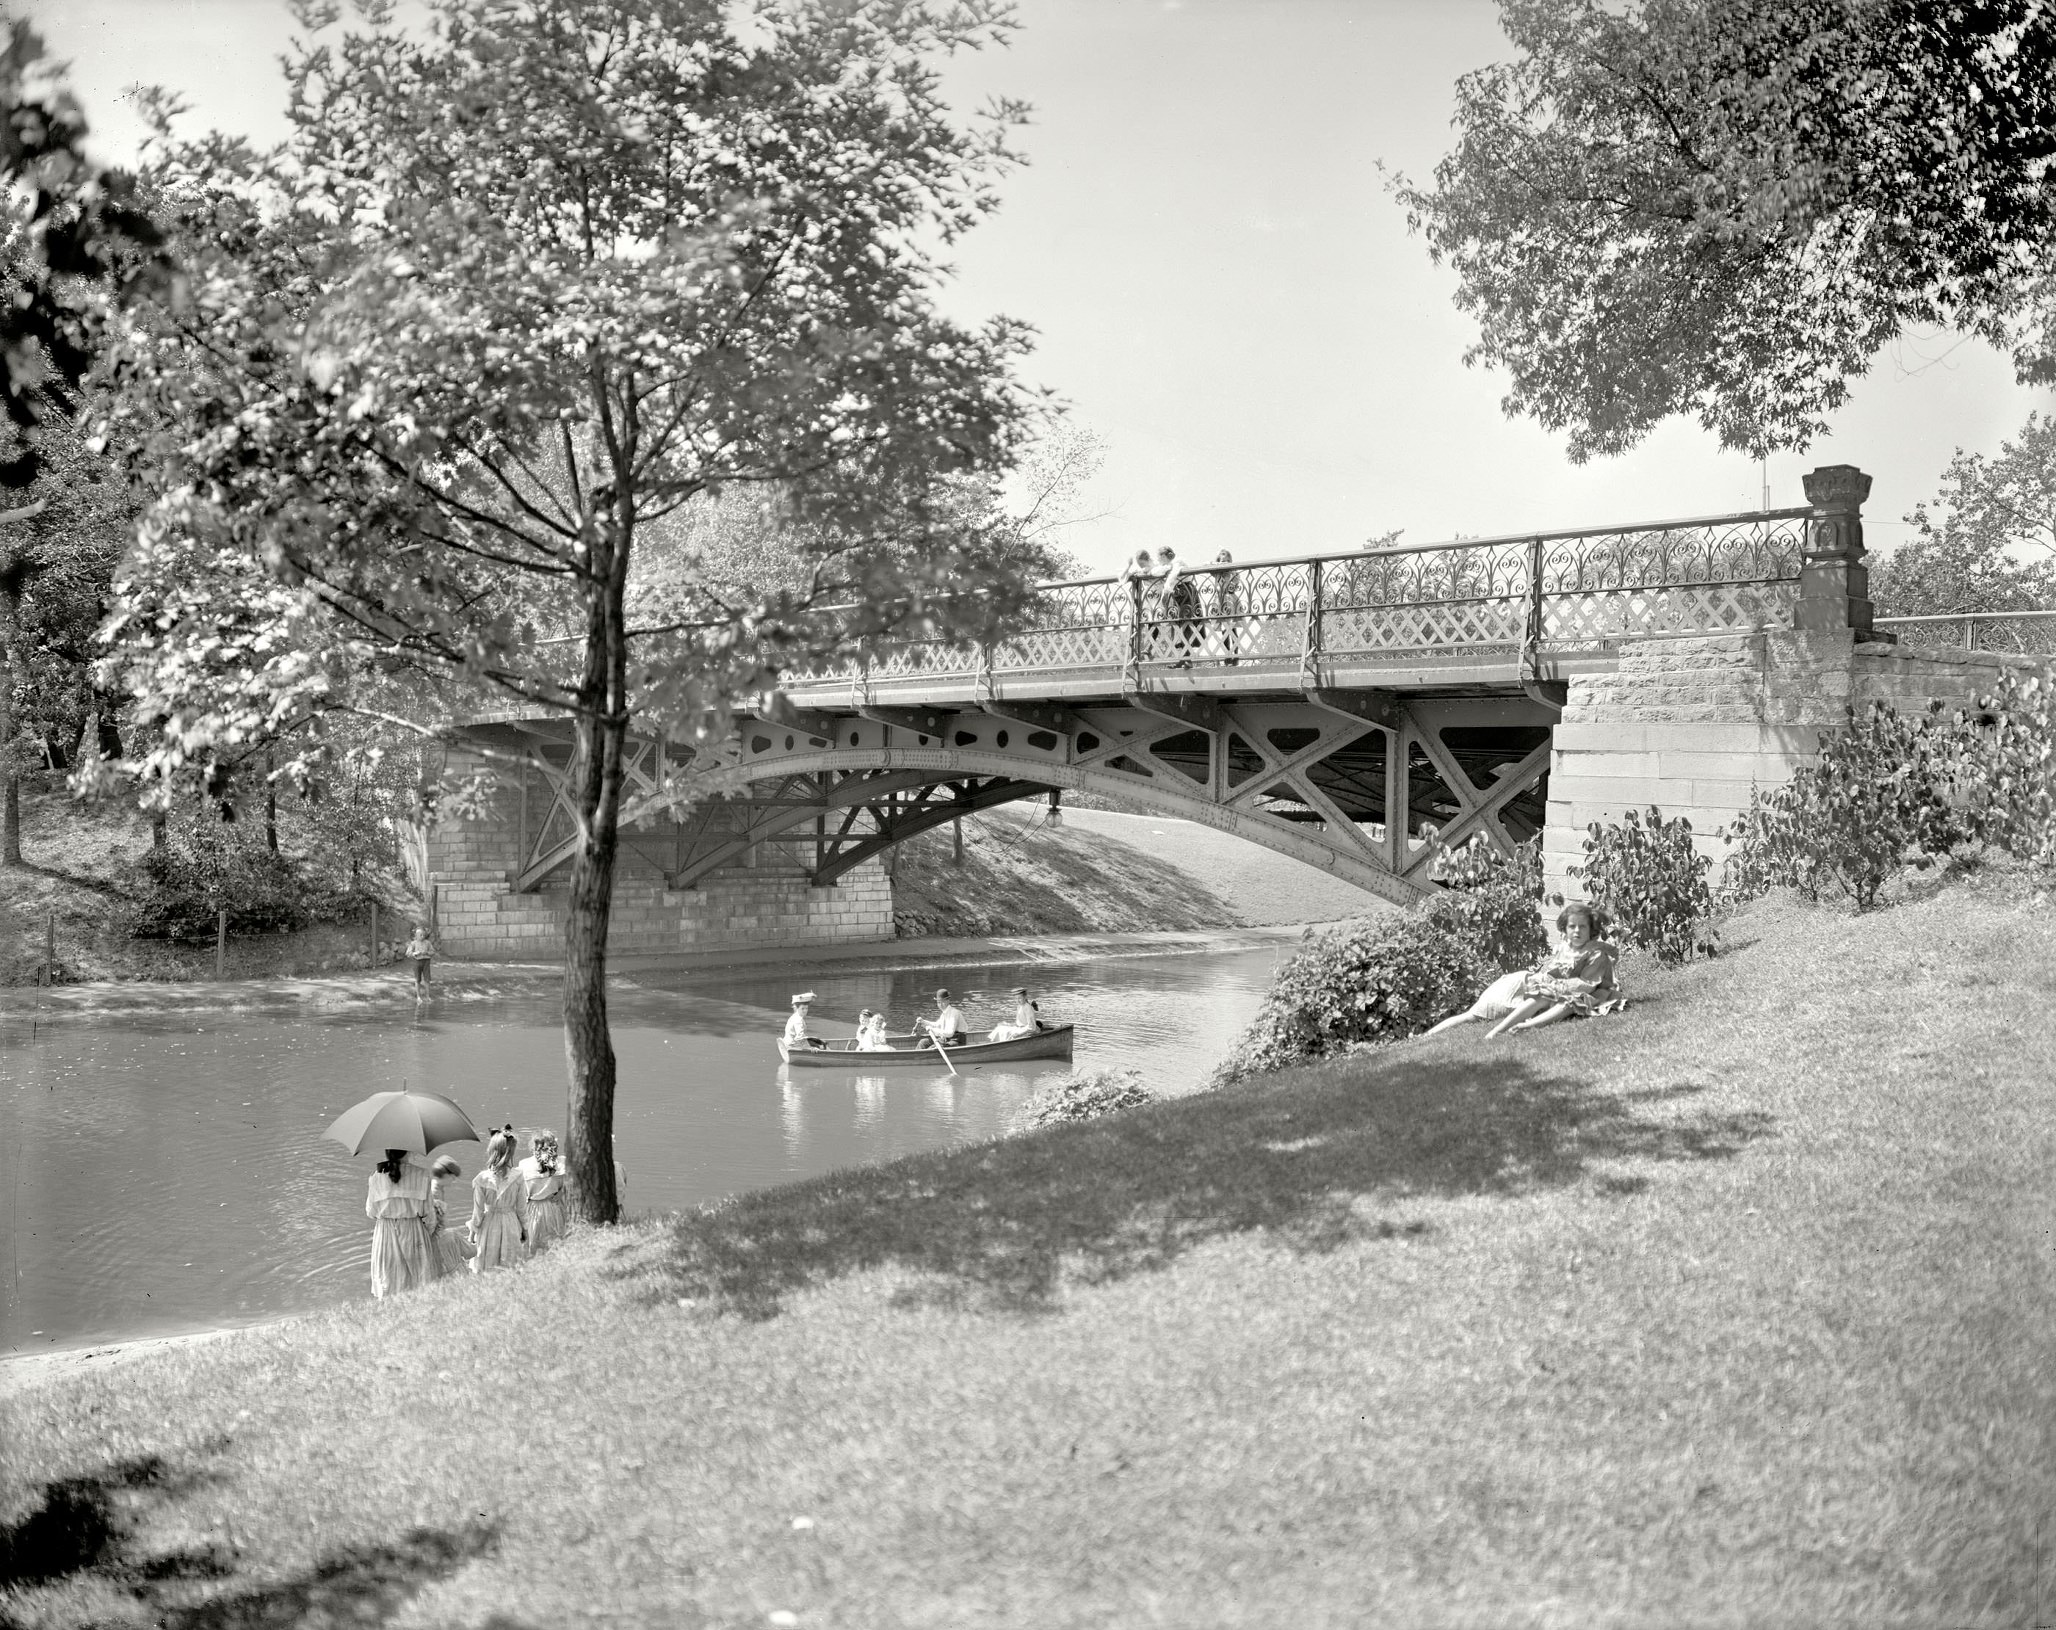 The bridge, Lincoln Park, Chicago circa 1905